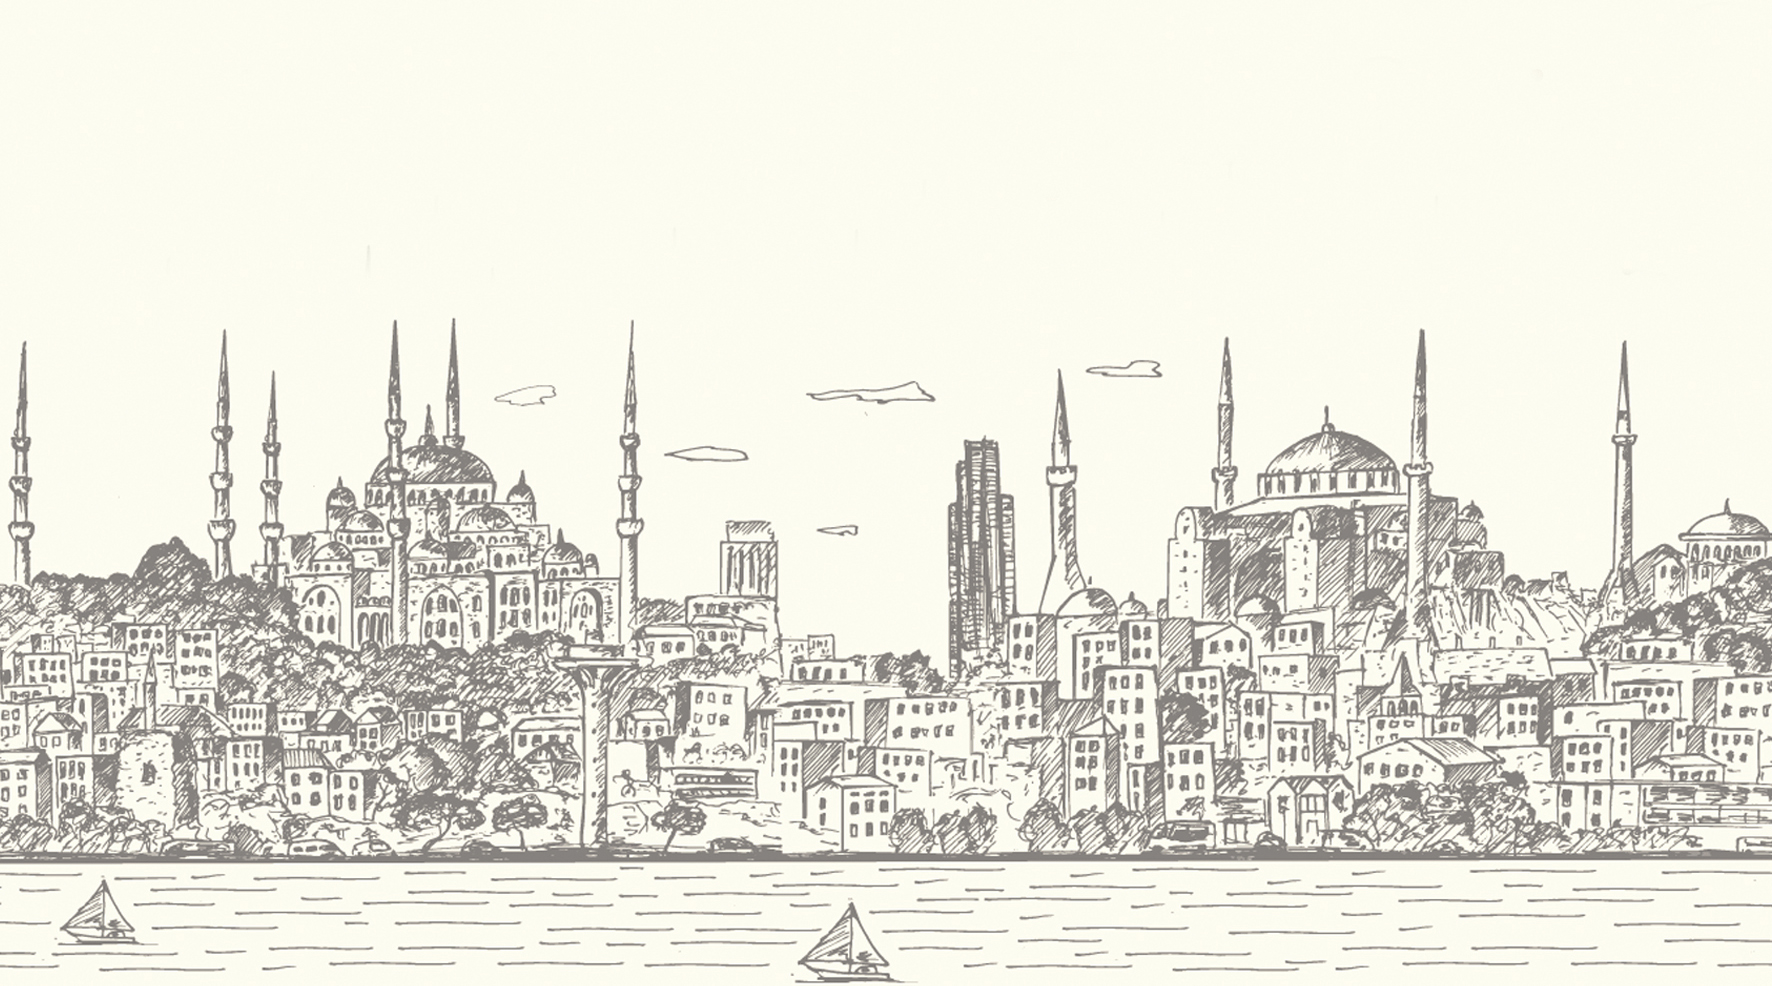 İstanbul’un Yedi Tepesi: Efsanelerle Bezenmiş Tarihi Şehir